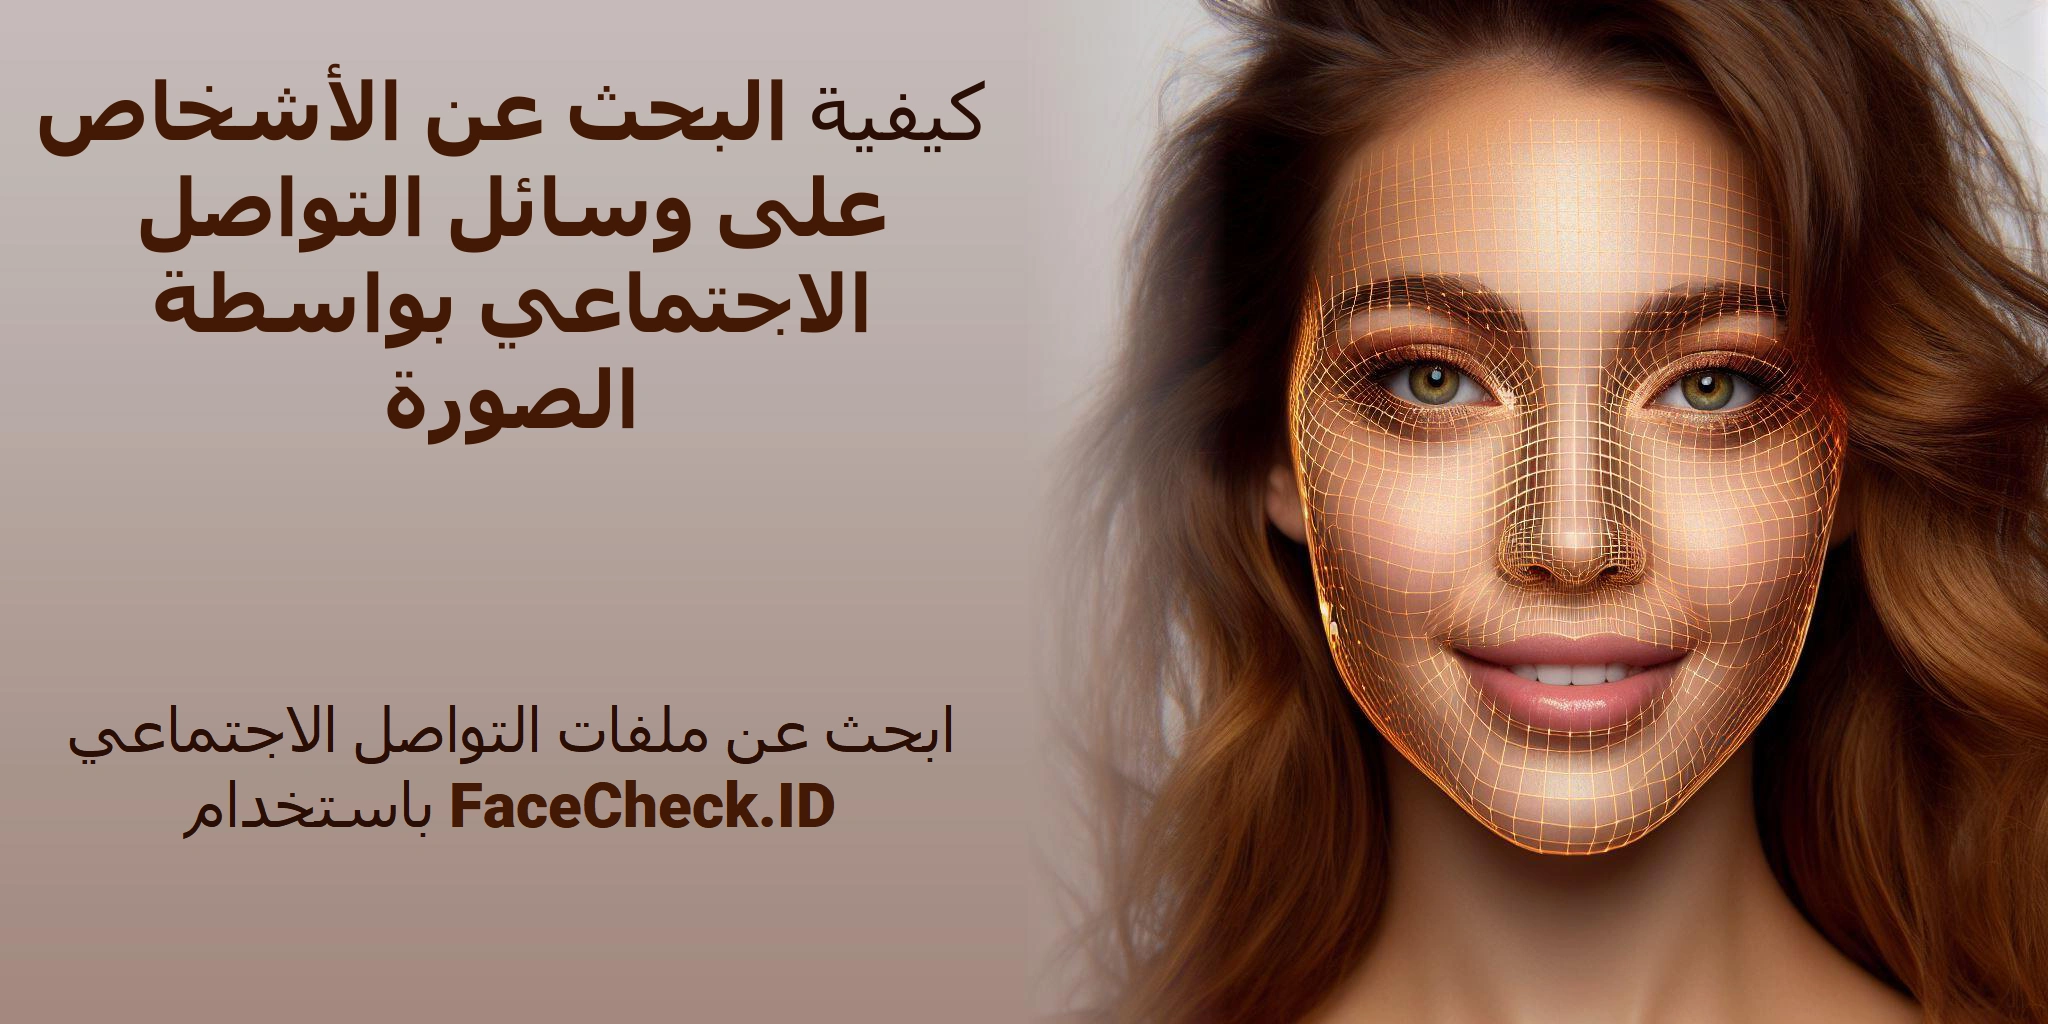 كيفية البحث عن الأشخاص على وسائل التواصل الاجتماعي بواسطة الصورة ابحث عن ملفات التواصل الاجتماعي باستخدام FaceCheck.ID